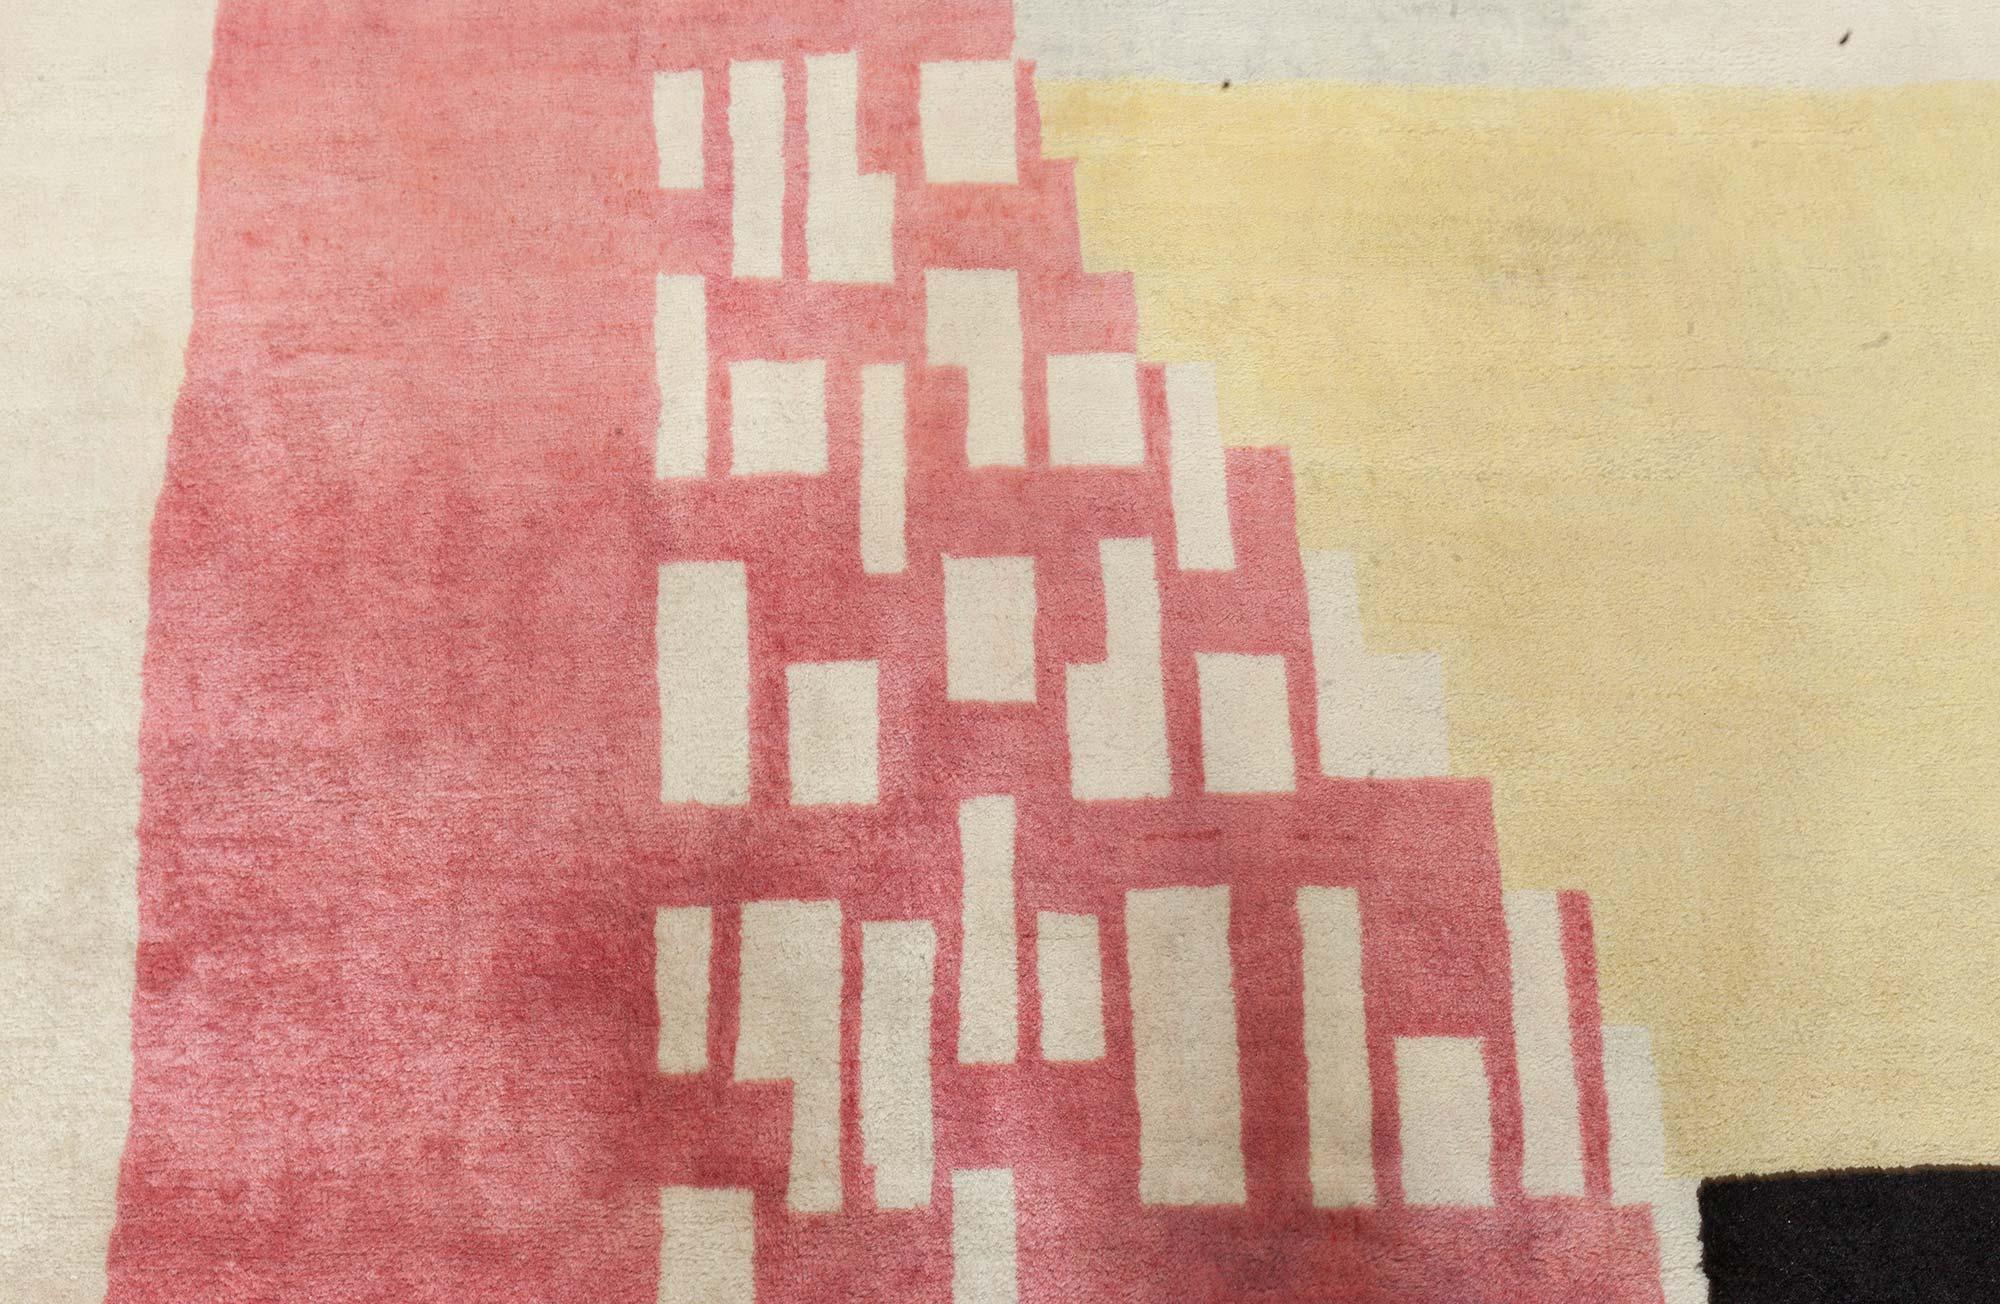 Moderner Teppich im Art-déco-Stil von Doris Leslie Blau.
Farbe: beige, schwarz, rosa, violett, gelb.
Dieser Art-Déco-Teppich lehnt sich weitgehend an die besten Traditionen des Art-Déco an. Er zeichnet sich durch kantige Eleganz aus, die aus jedem